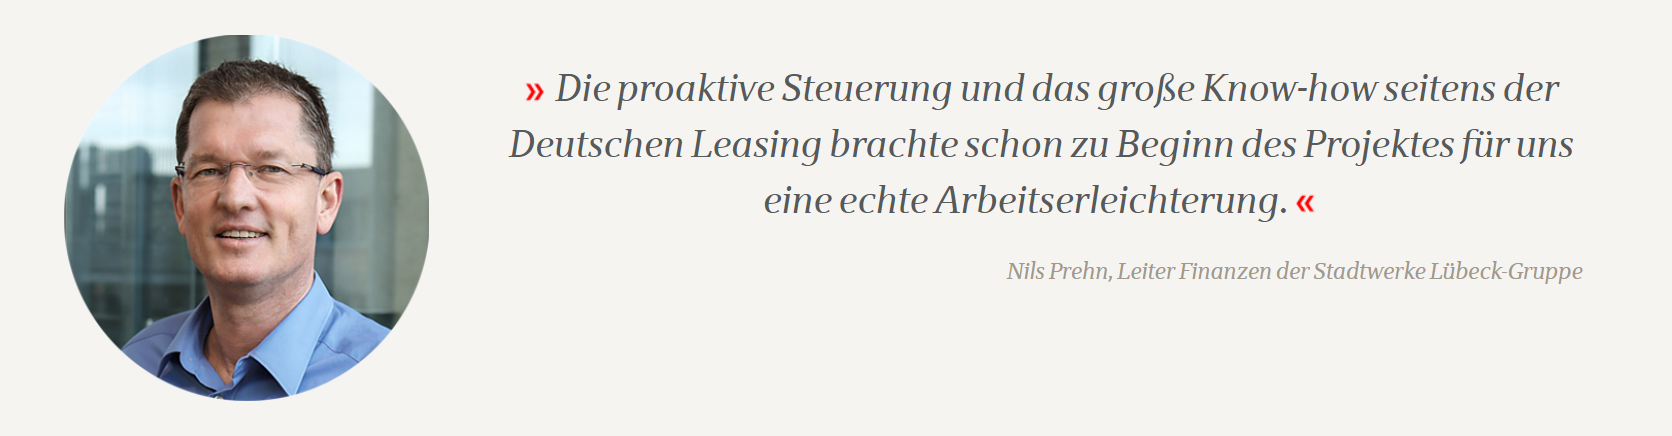 Nils Prehn, Leiter Finanzen der Stadtwerke Lübeck-Gruppe